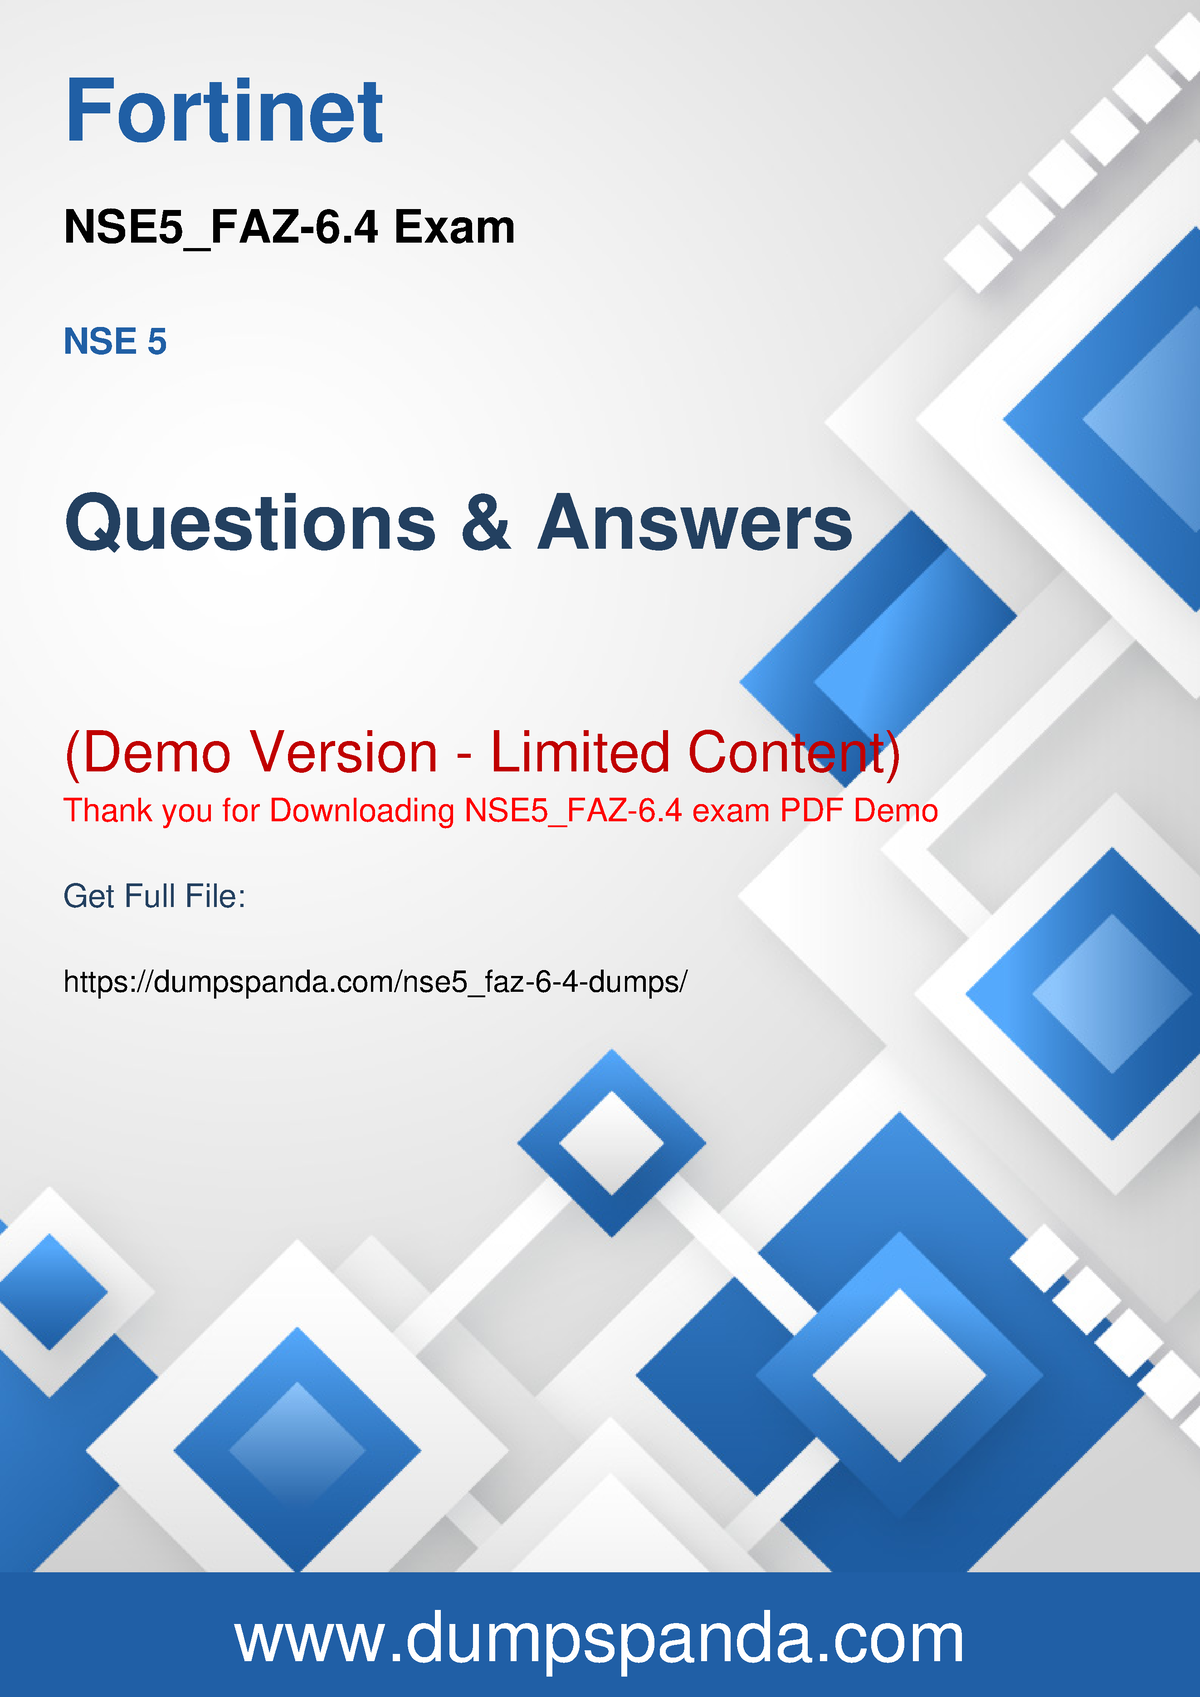 NSE5_FAZ-7.0 Prüfungsvorbereitung